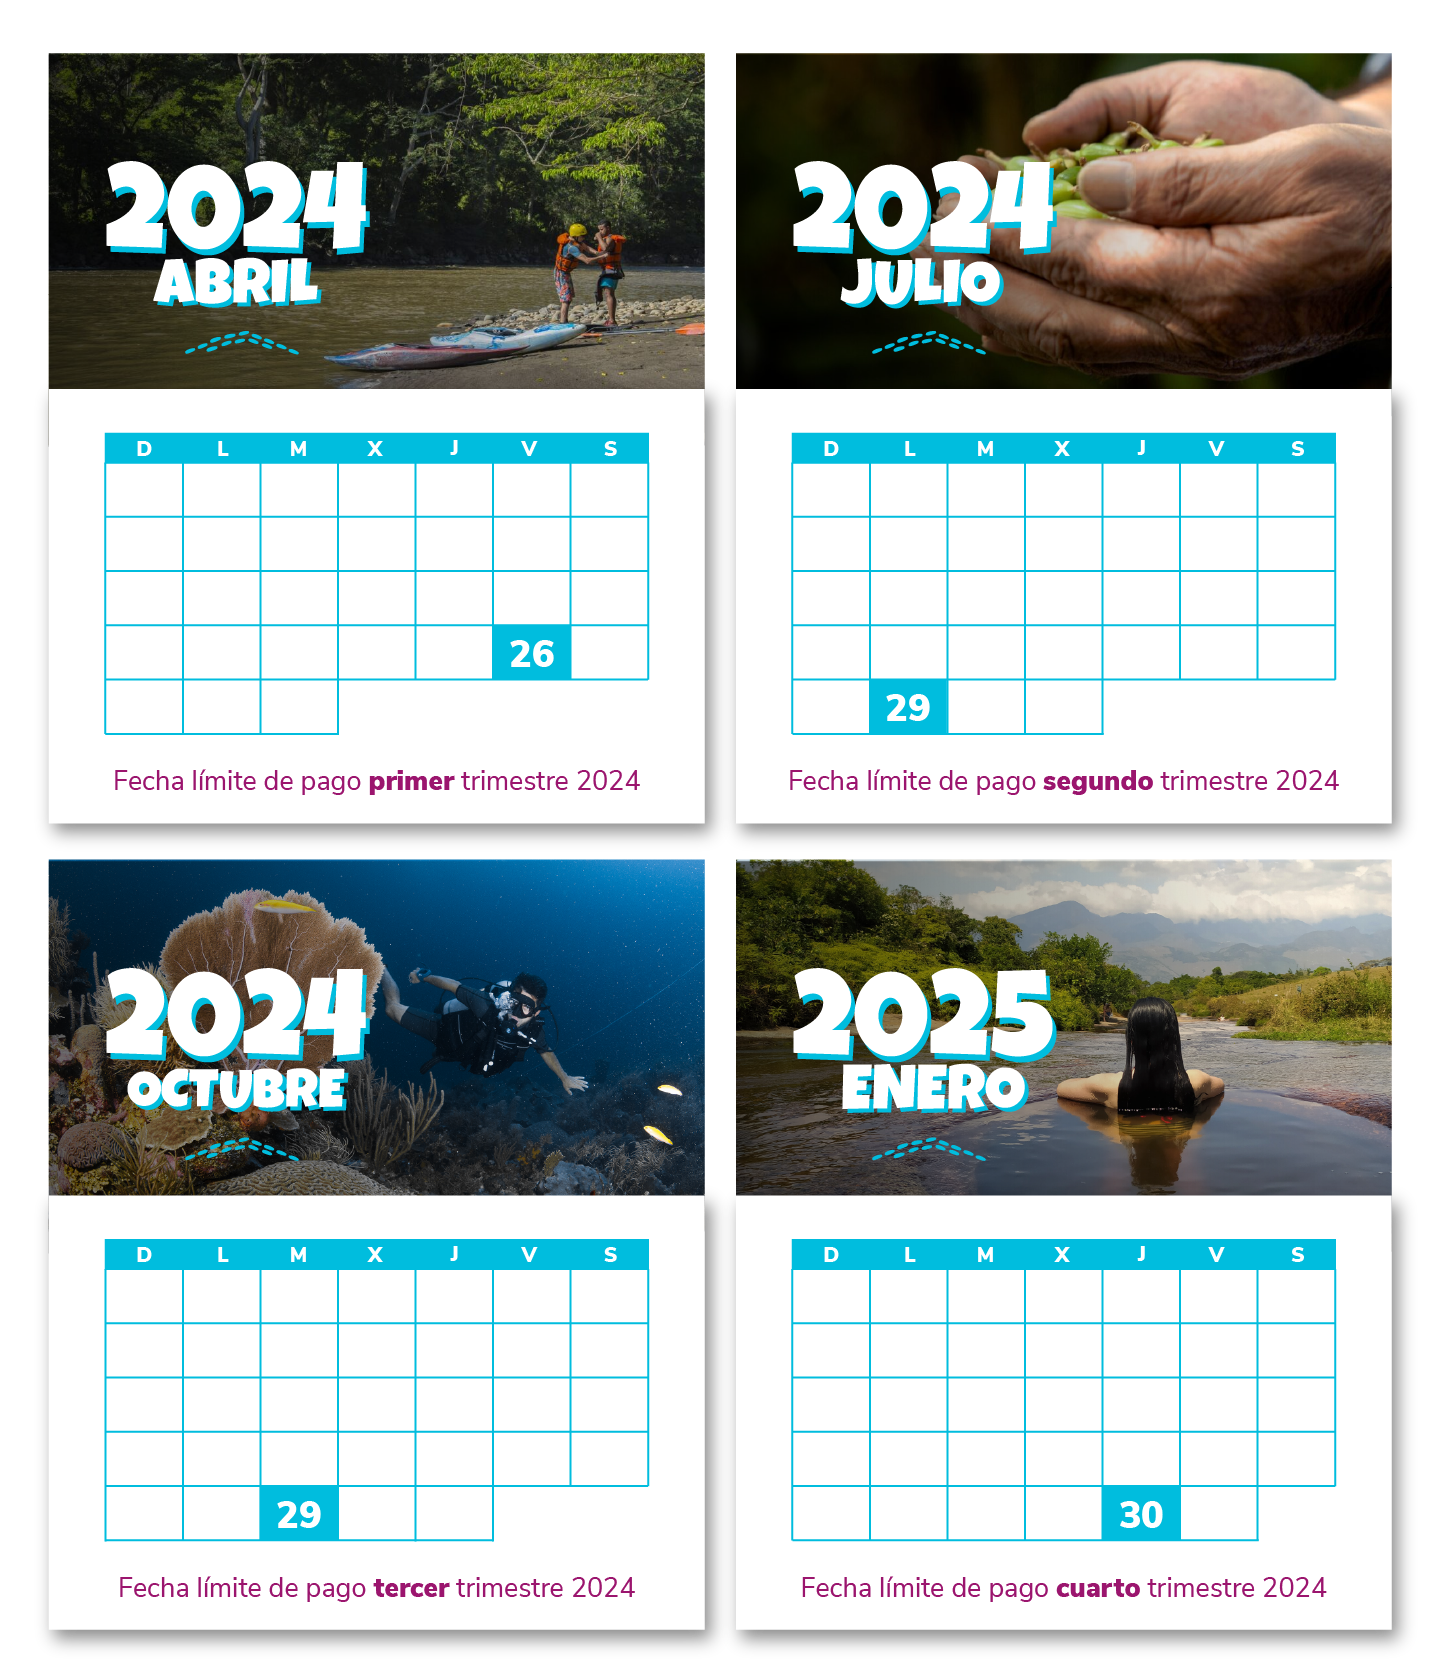 Calendario pagos 2021